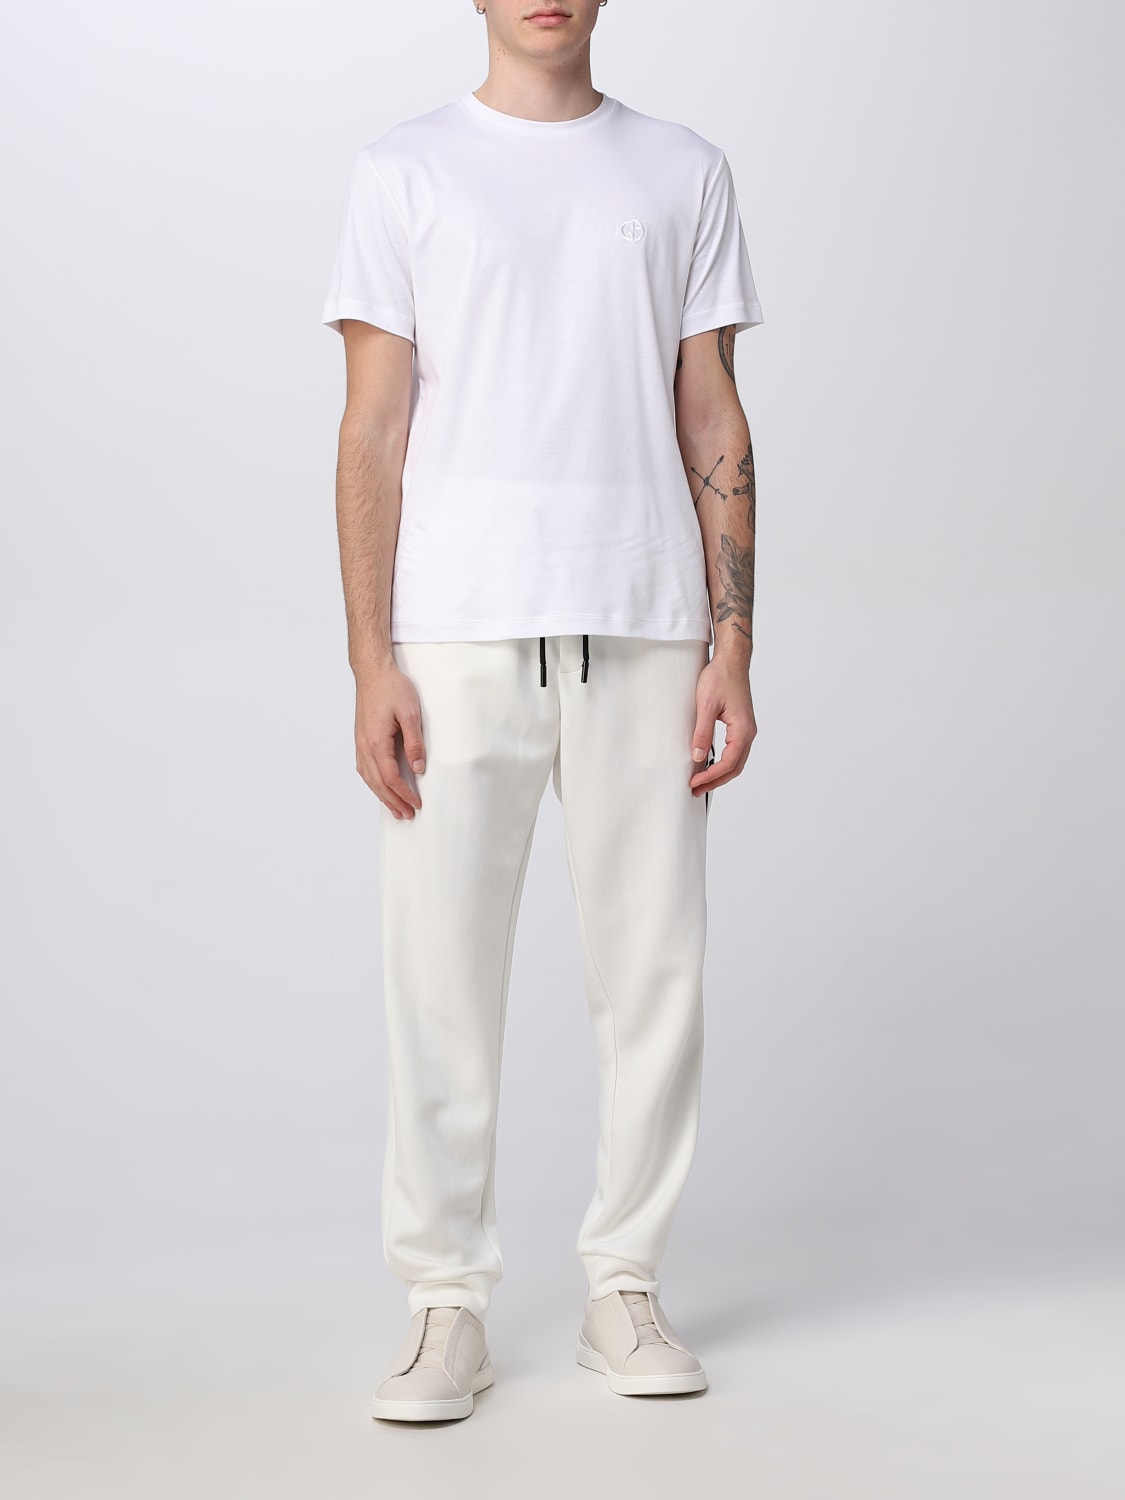 Giorgio Armaniアウトレット：Tシャツ メンズ - ホワイト | GIGLIO.COM